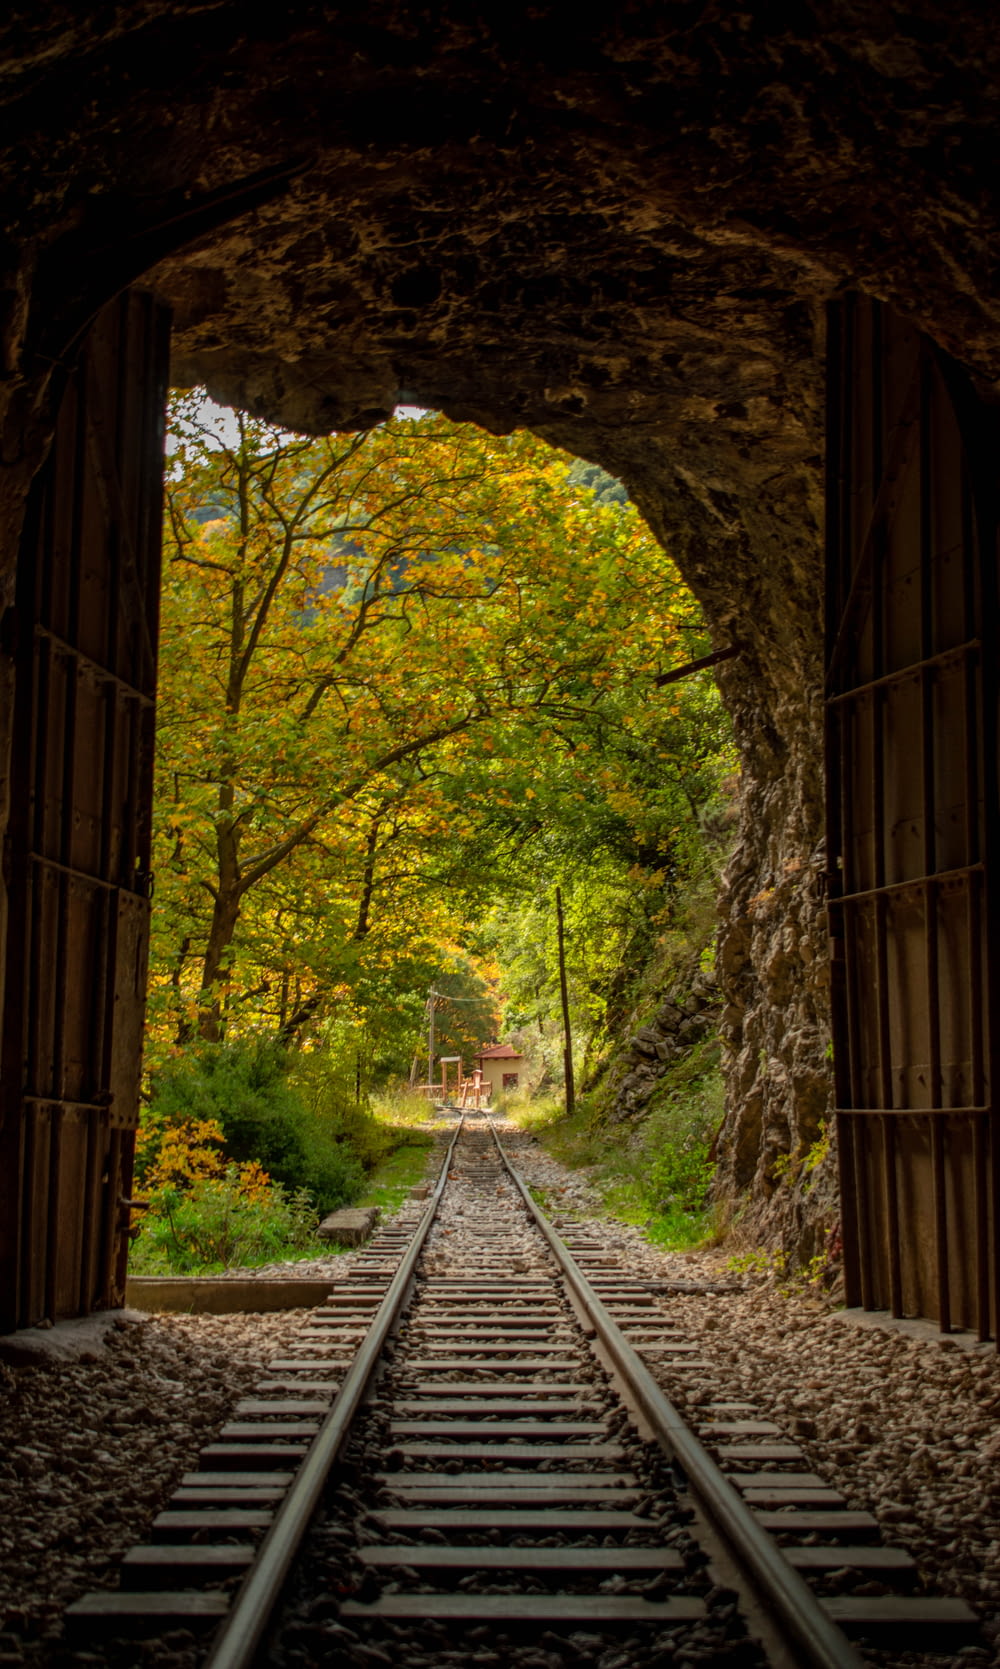 배경에 나무가 있는 터널을 통과하는 기차 트랙